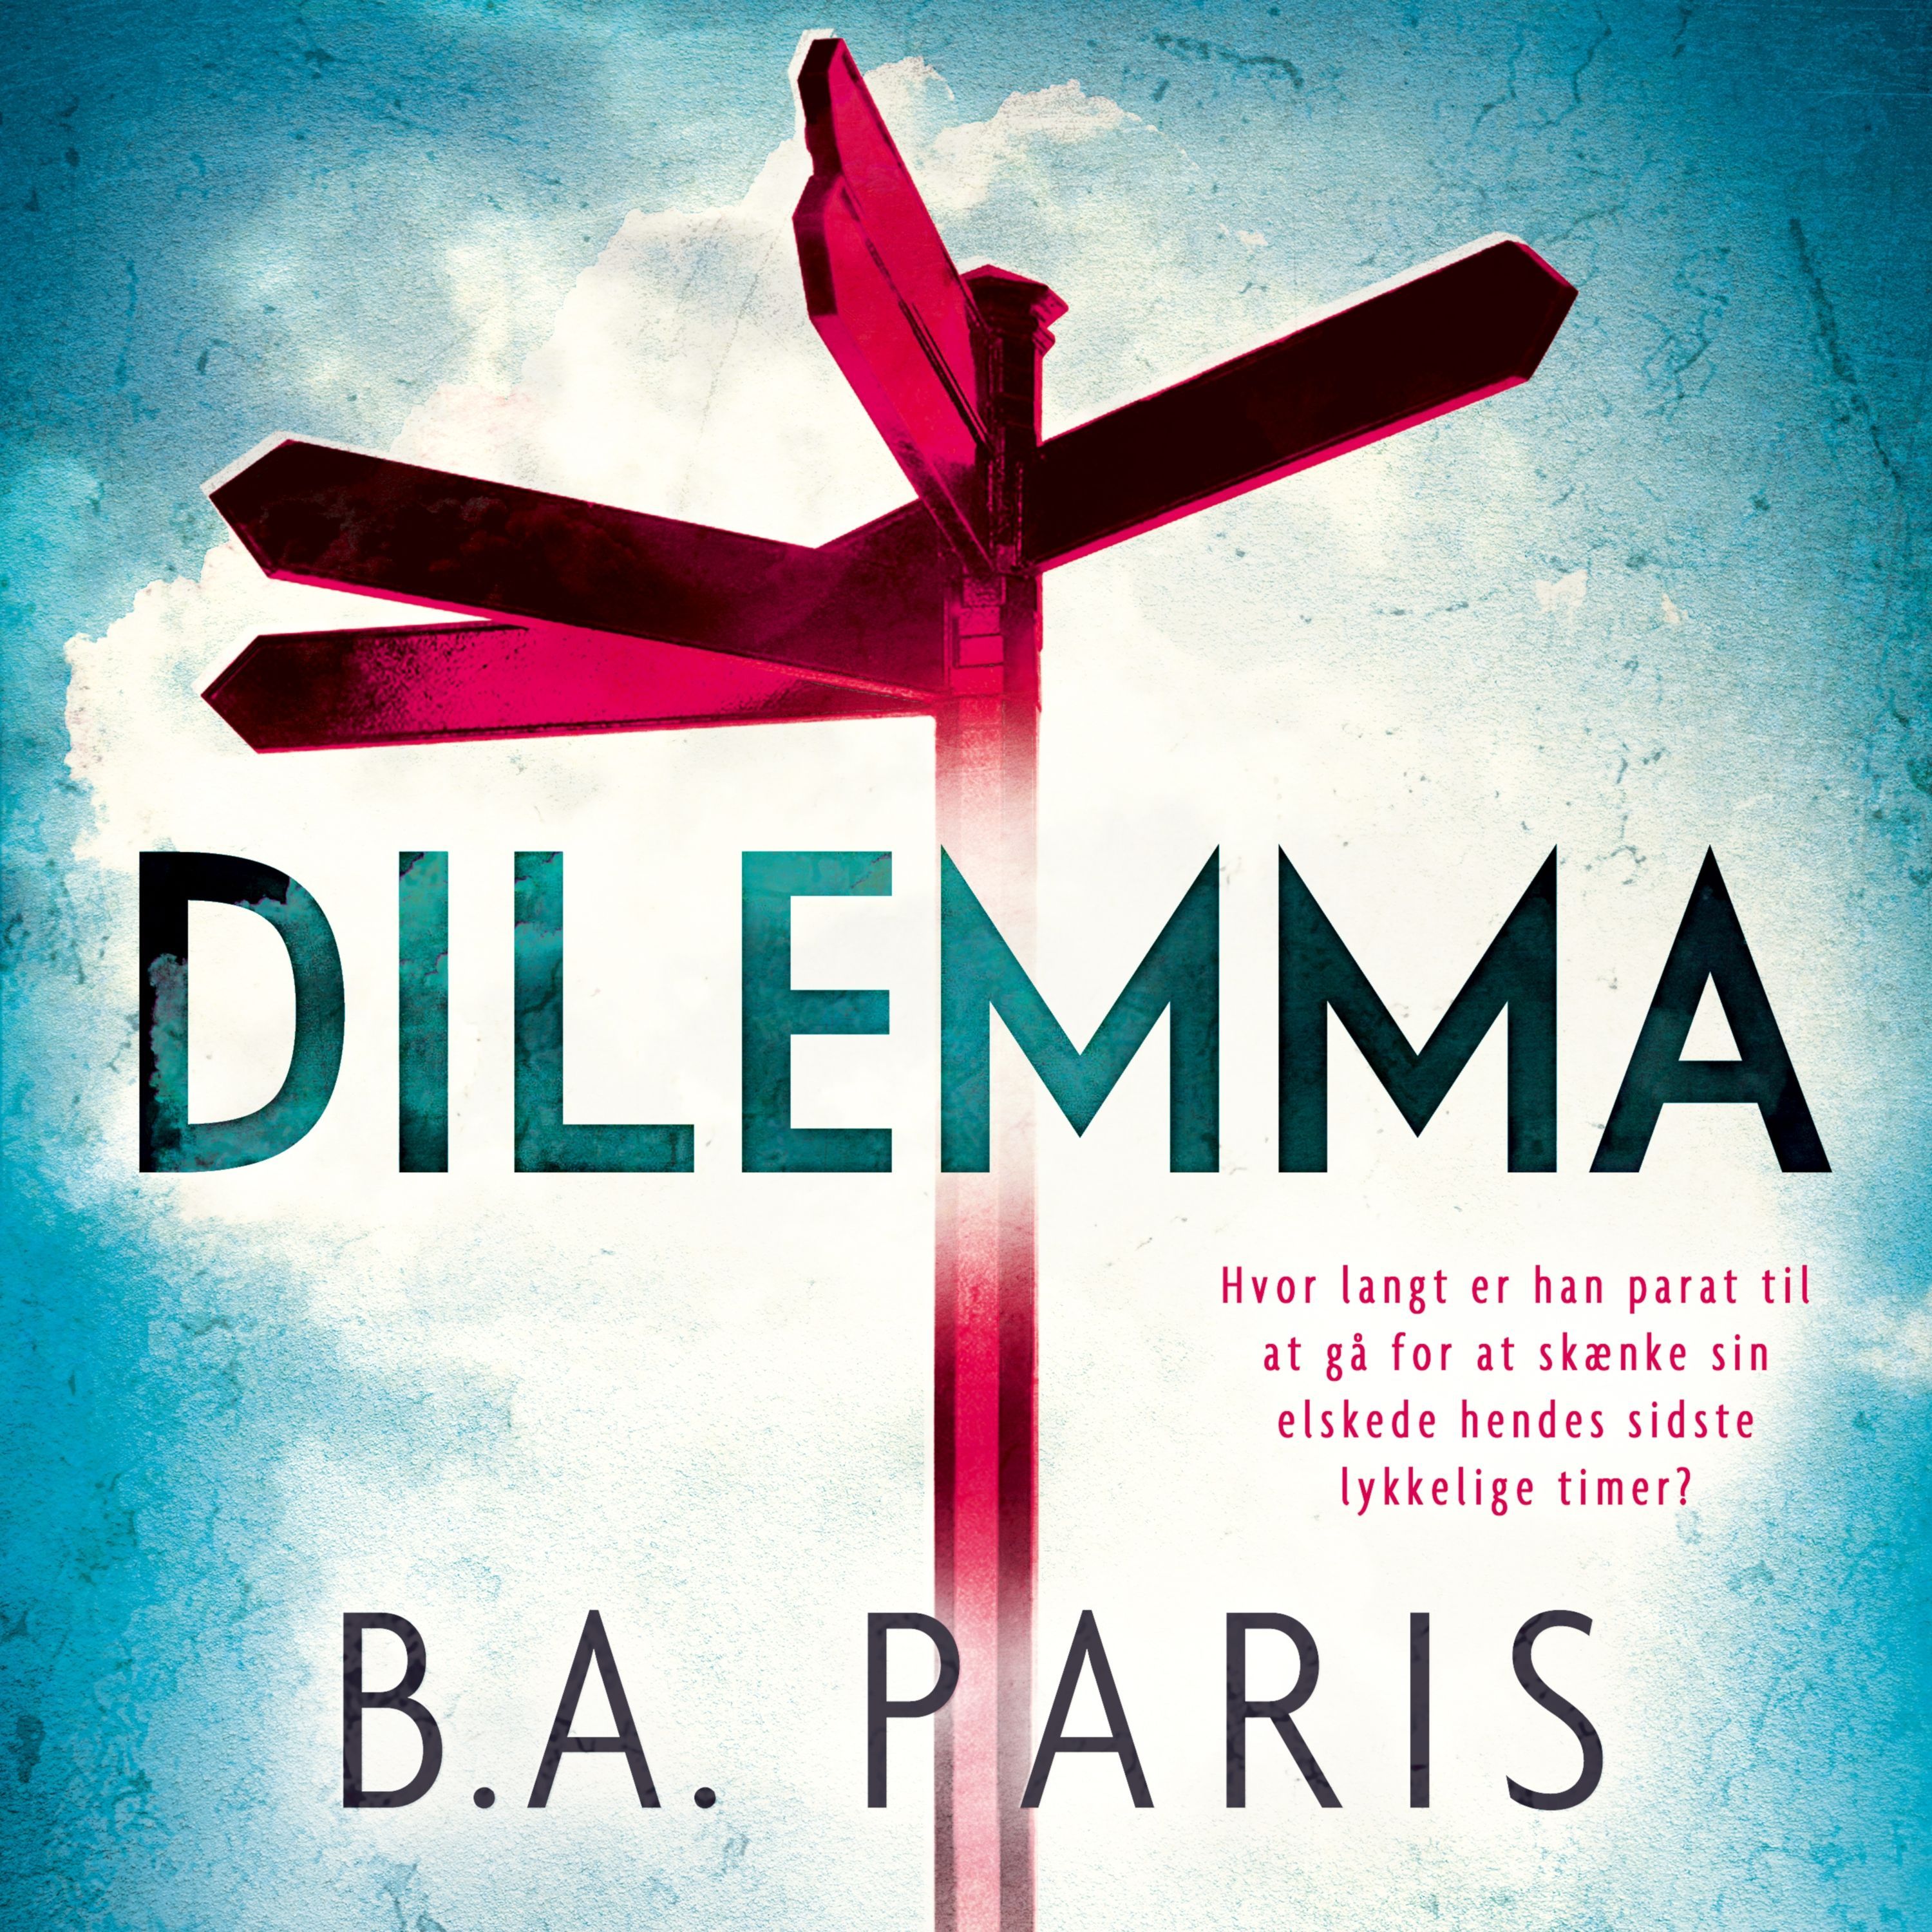 Dilemma, ljudbok av B.A. Paris